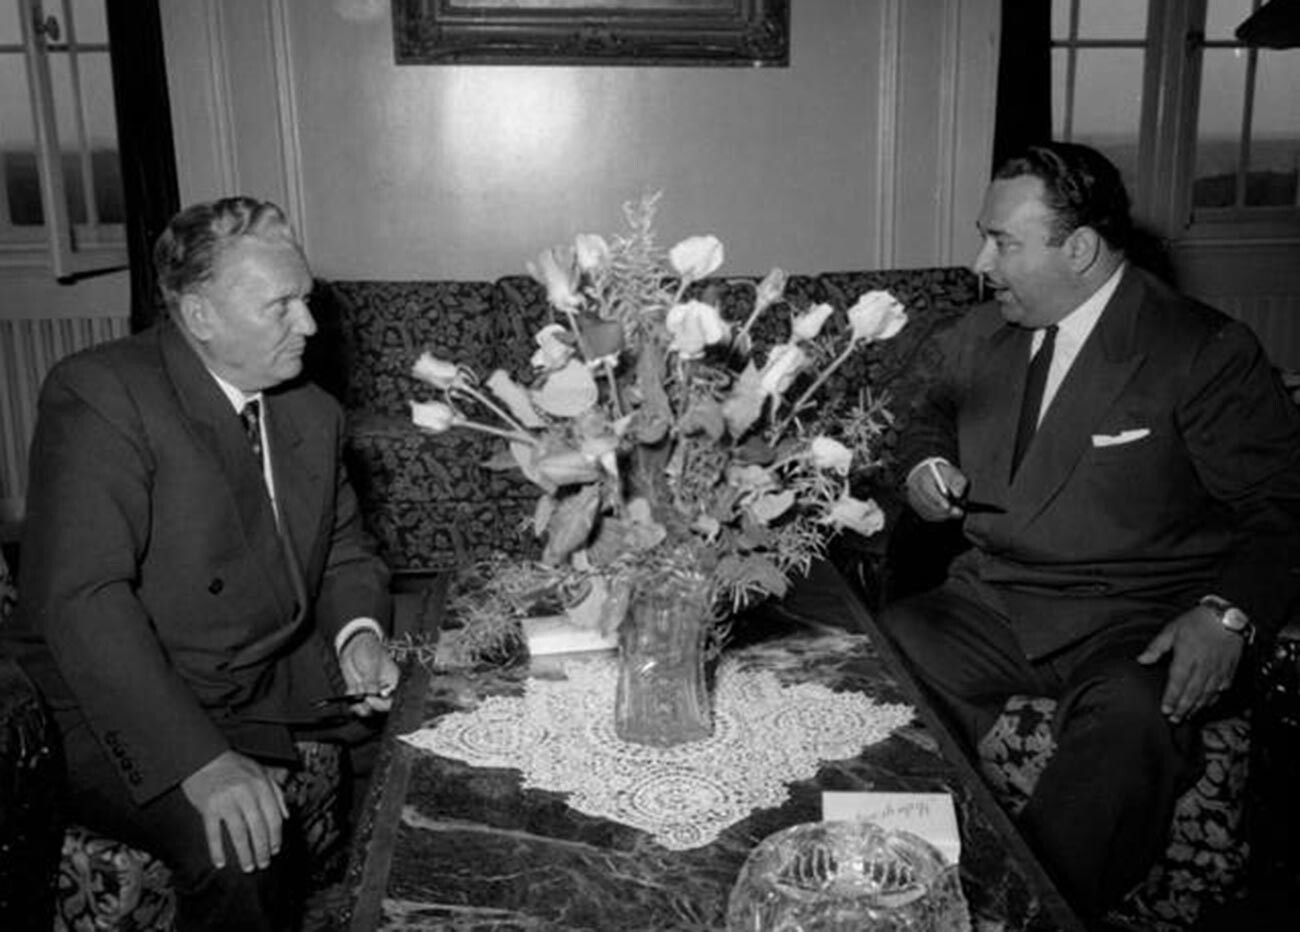 Tito incontra Iosif Grigulevich, il nuovo ambasciatore della Costa Rica in Jugoslavia